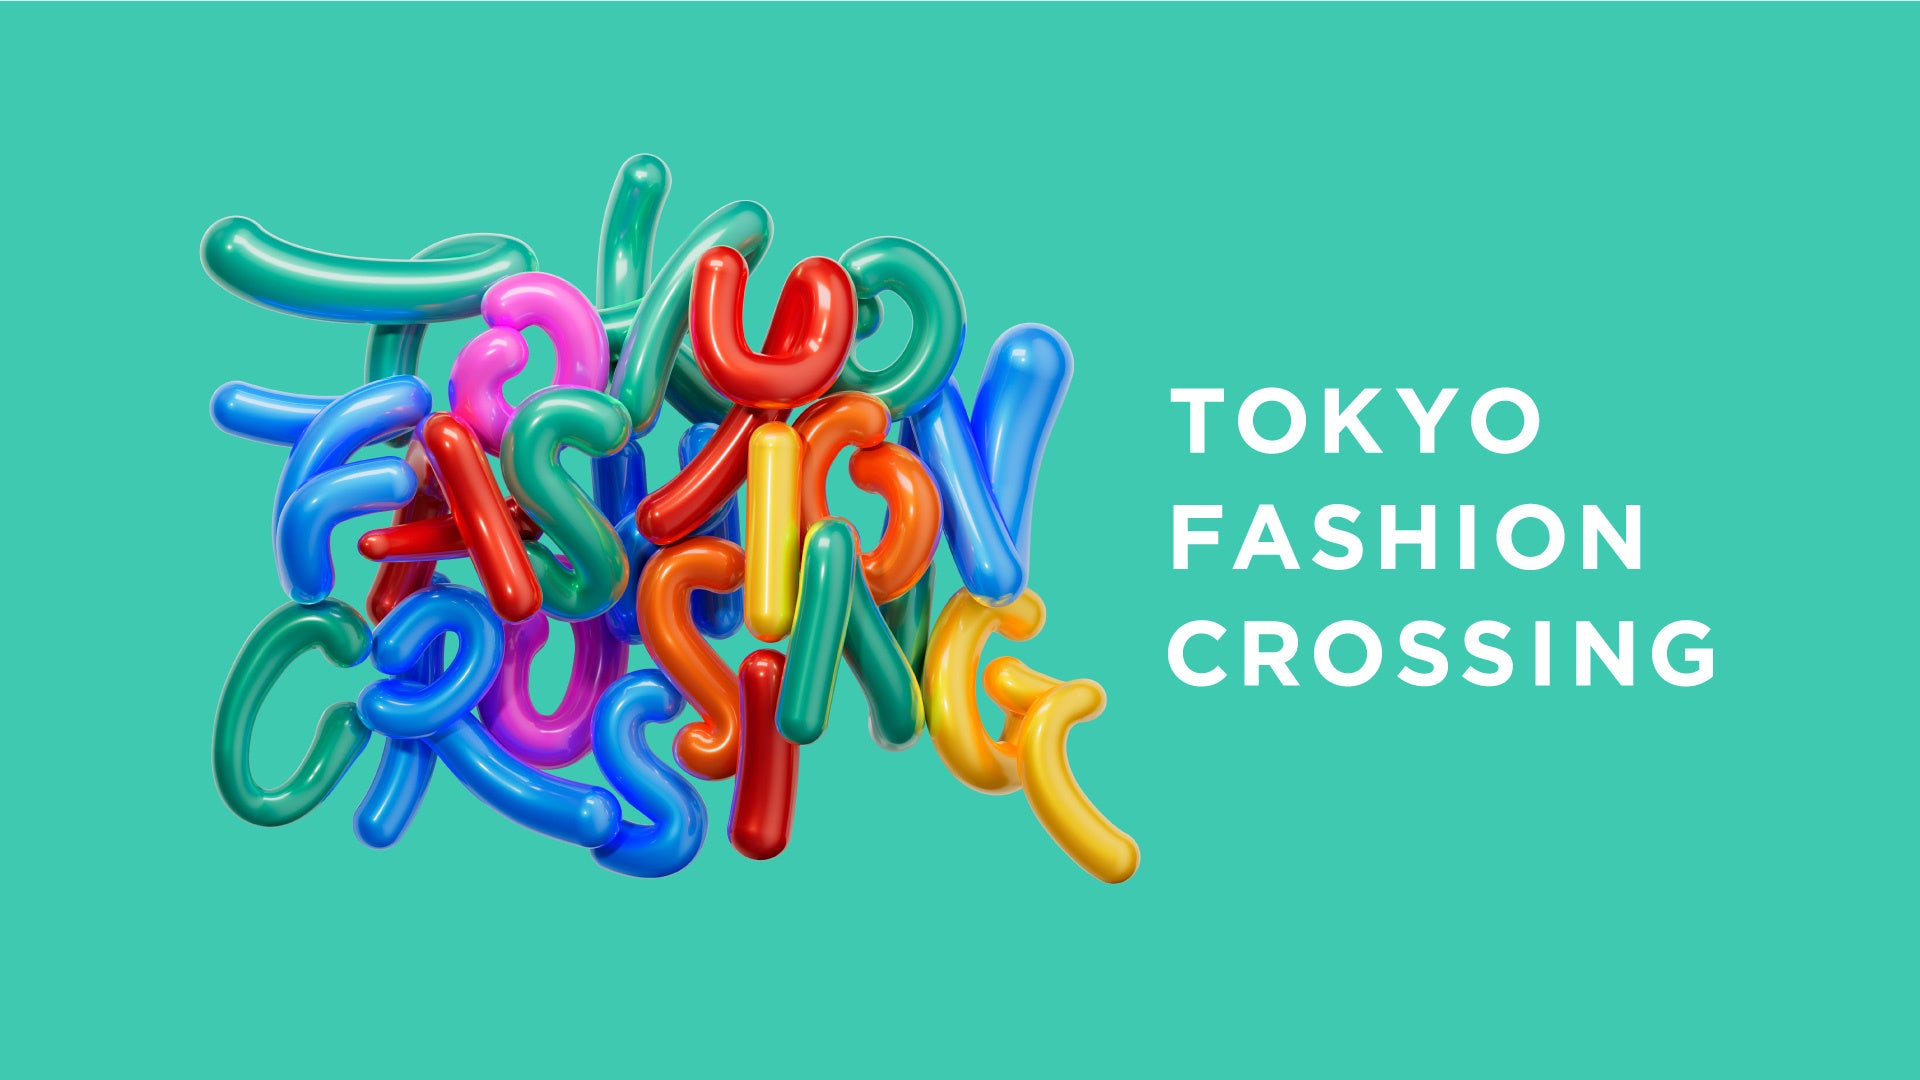 スタークリエイション所属の人気クリエイター3名が「TOKYO FASHION CROSSING」のステージに出演しました！